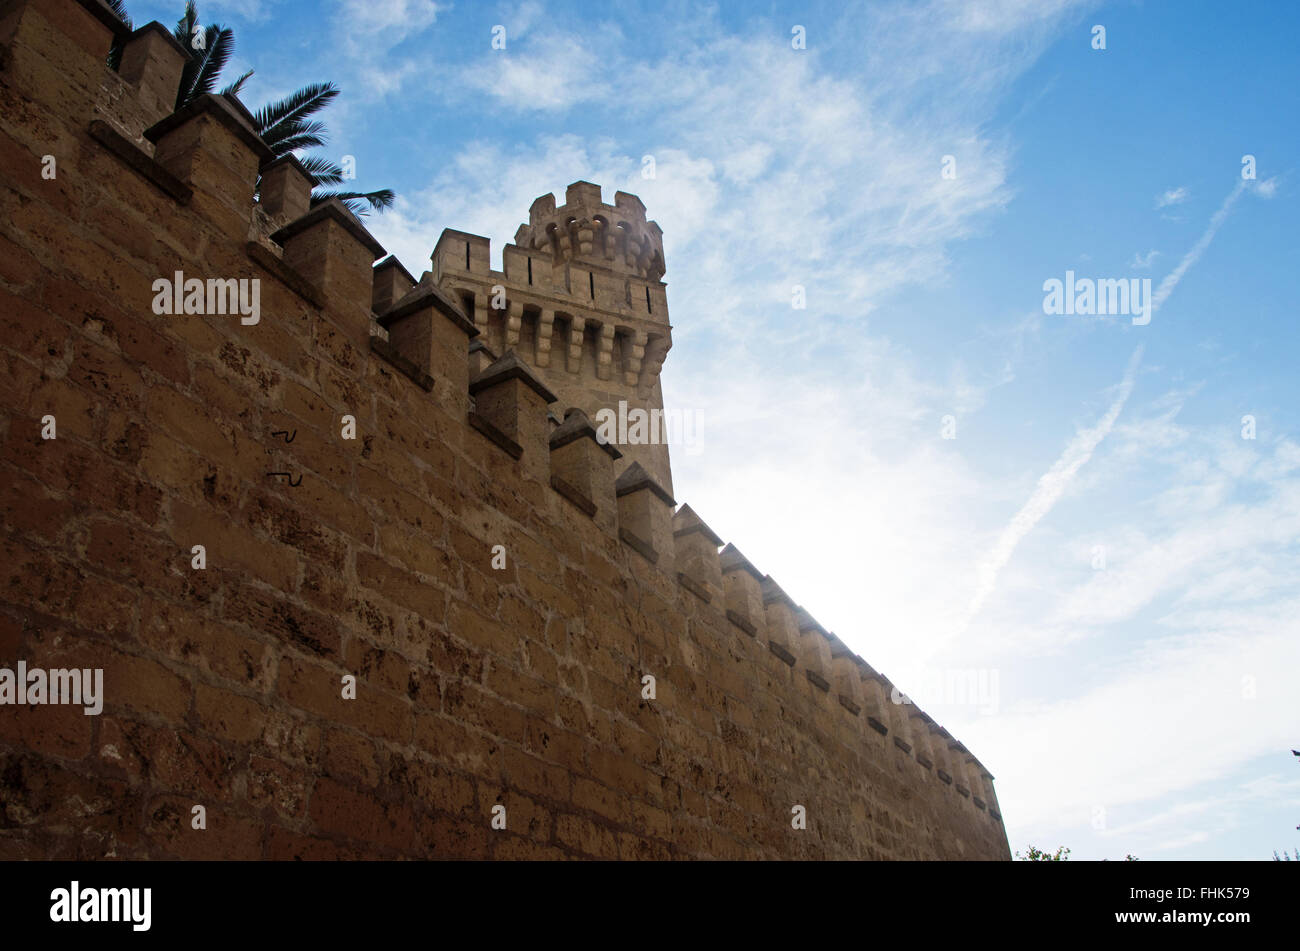 A Maiorca Isole Baleari: il Palazzo Reale di La Almudaina, l'Alcazar di Palma, un palazzo fortificato rivendicato come residenza reale nel XIV secolo Foto Stock